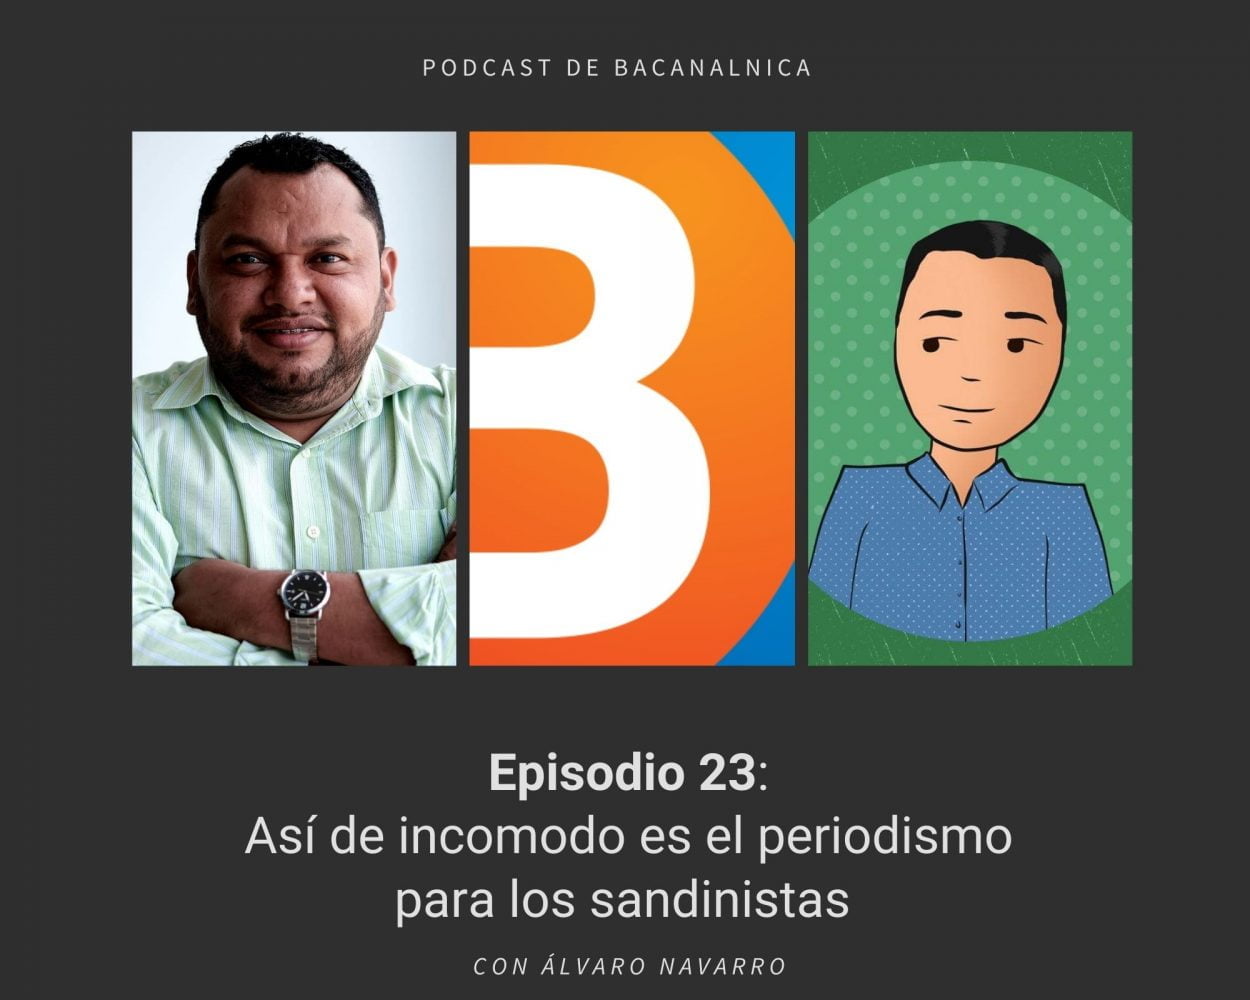 Episodio 23 del podcast de Bacanalnica, con Álvaro Navarro